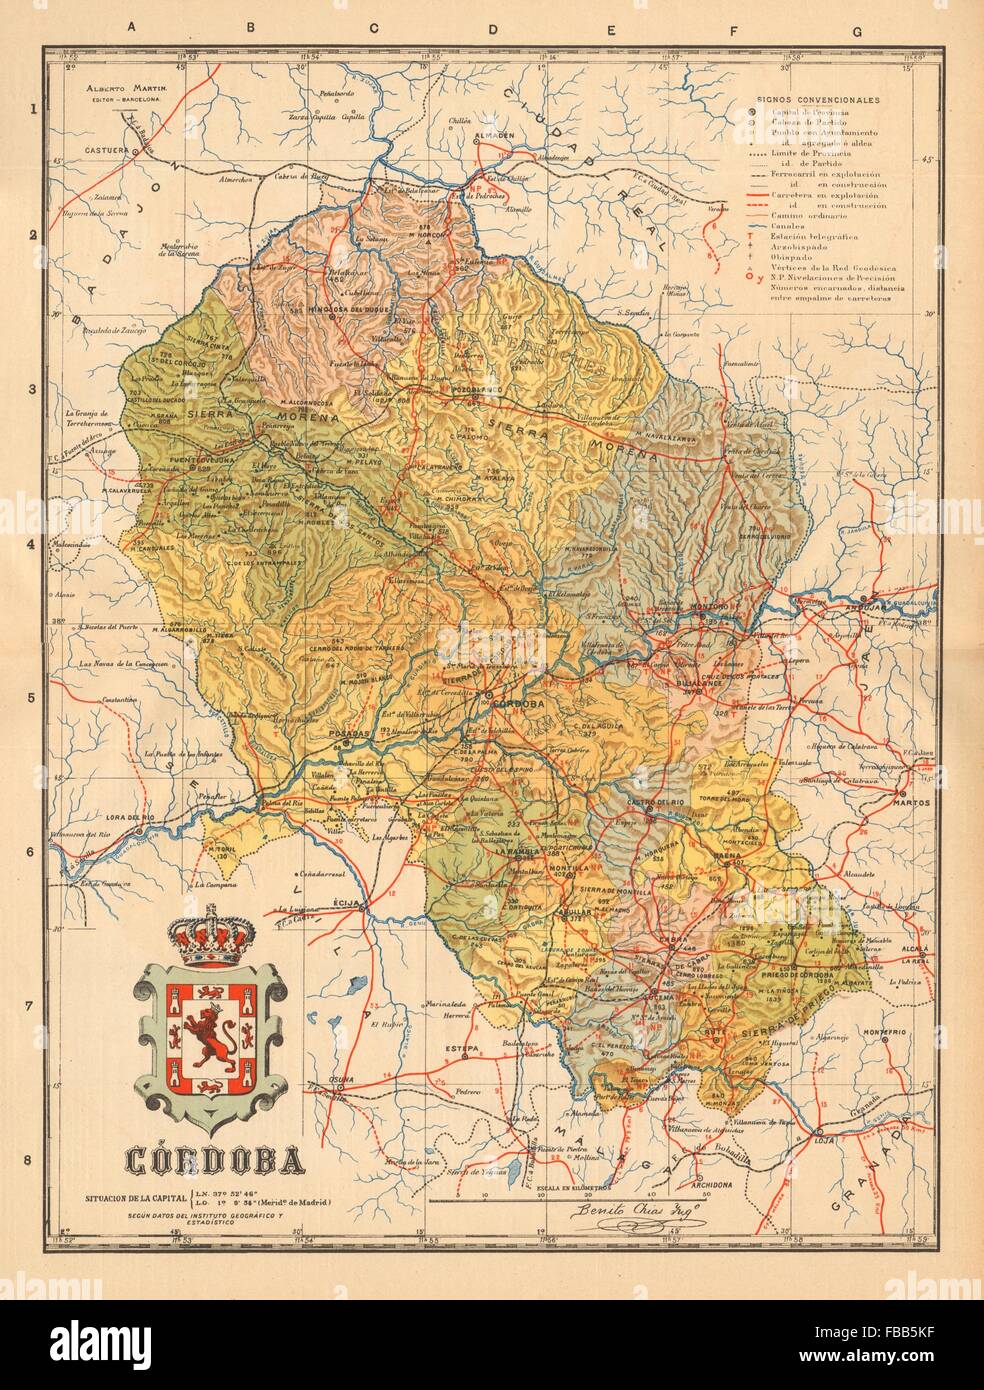 CÓRDOBA. Cordoba. Andalucia. Mapa antiguo de la provincia. ALBERTO MARTIN c1911 Stock Photo